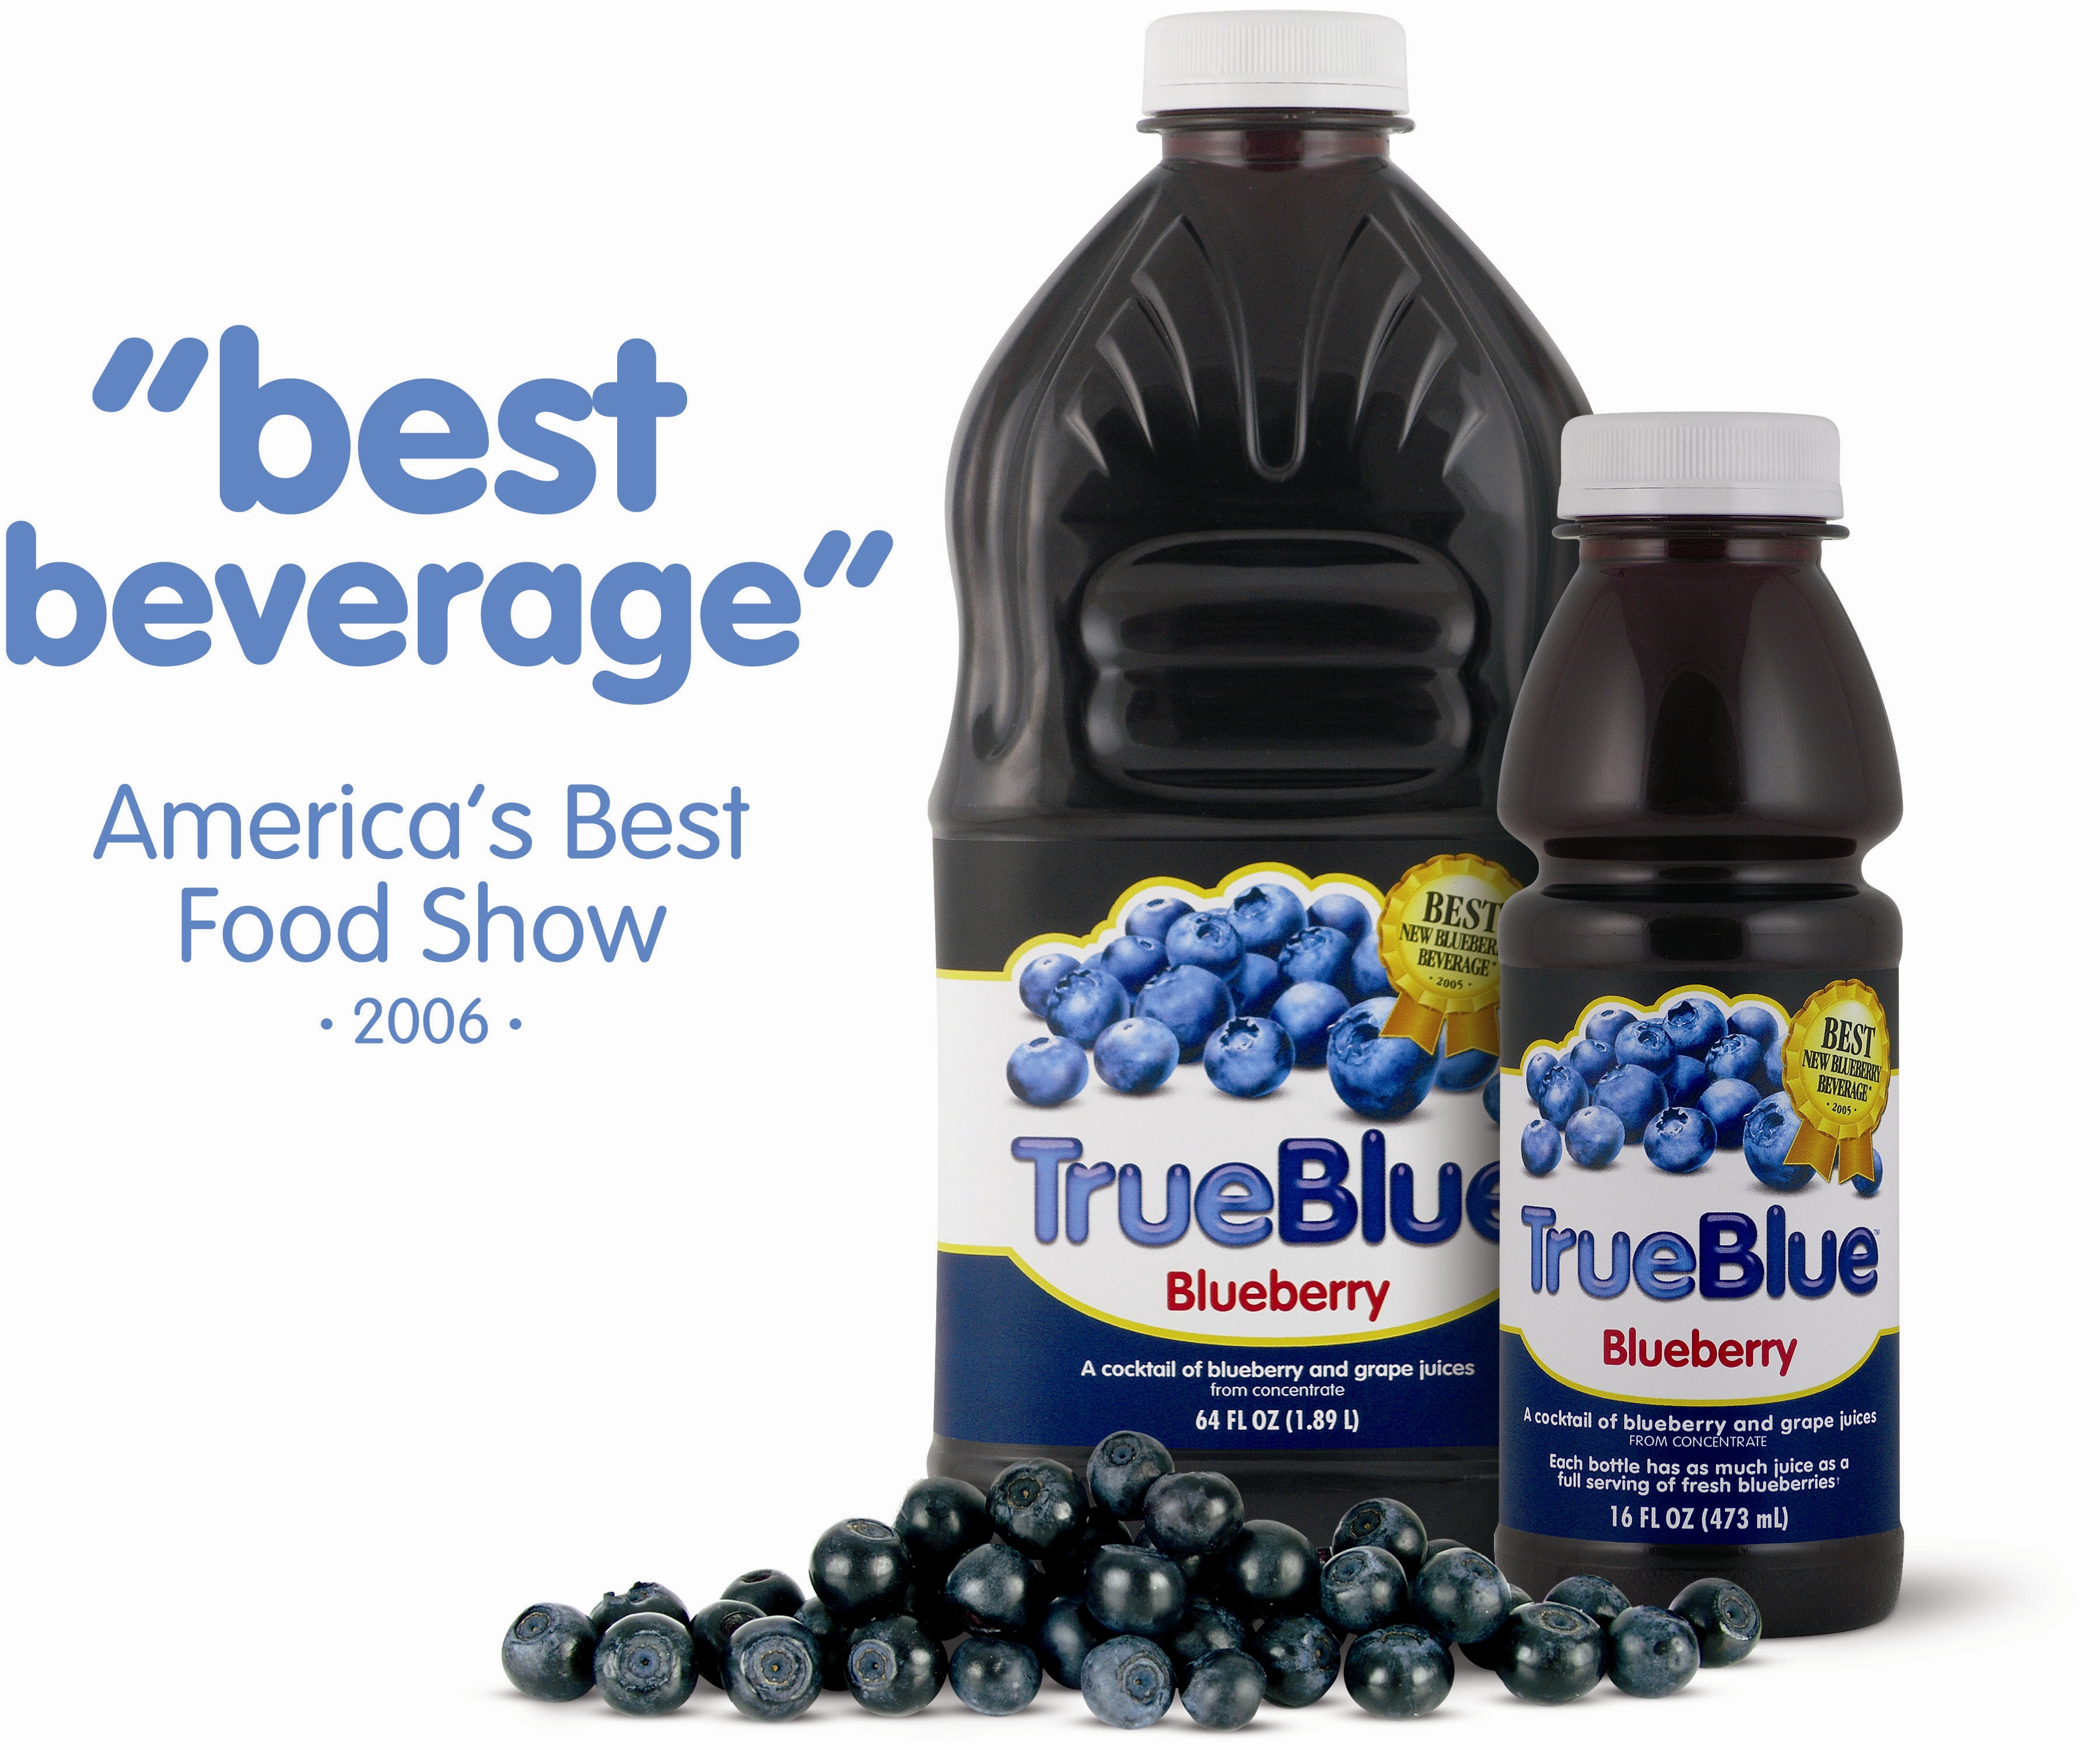 TrueBlue - America's Best Beverage